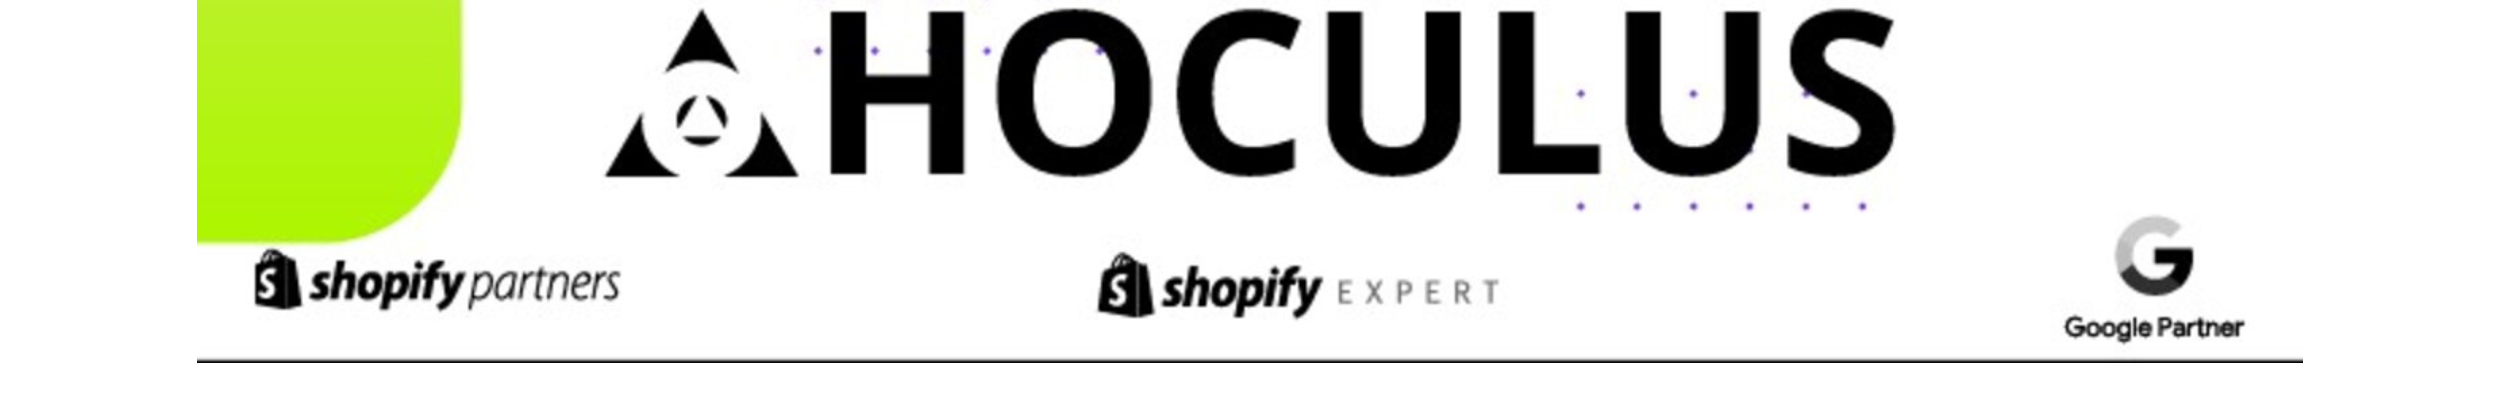 Logo Hoculus srl